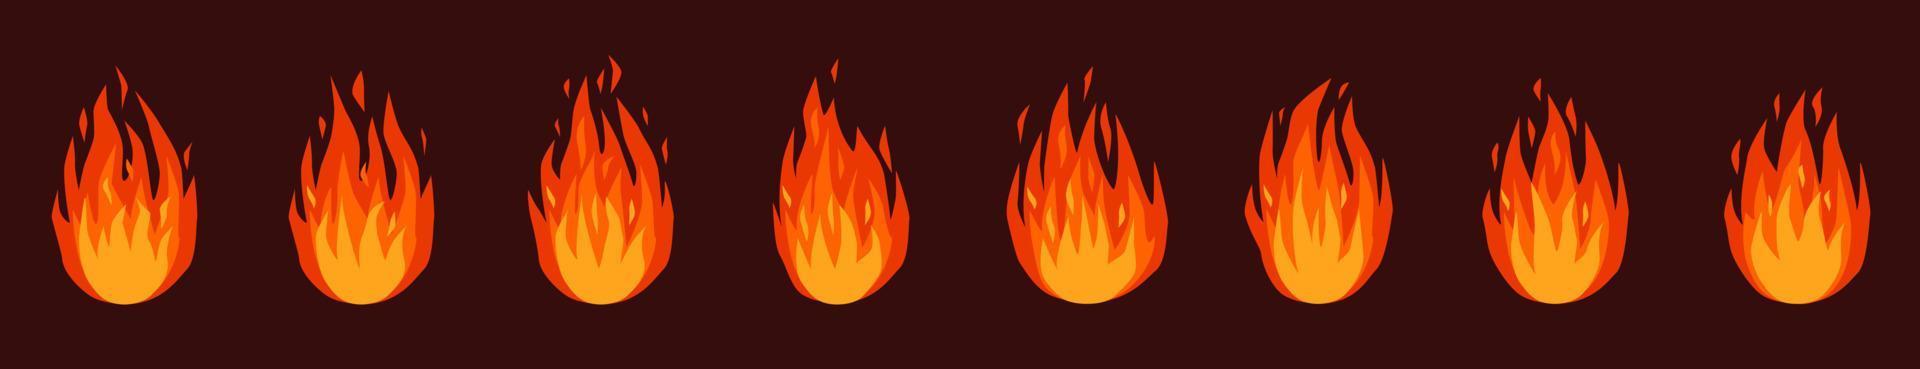 fuego animación. ardiente hoguera o hoguera, antorcha fuego llamas rojo, naranja flameante incendios efecto animado sprites sábana dibujos animados vector conjunto